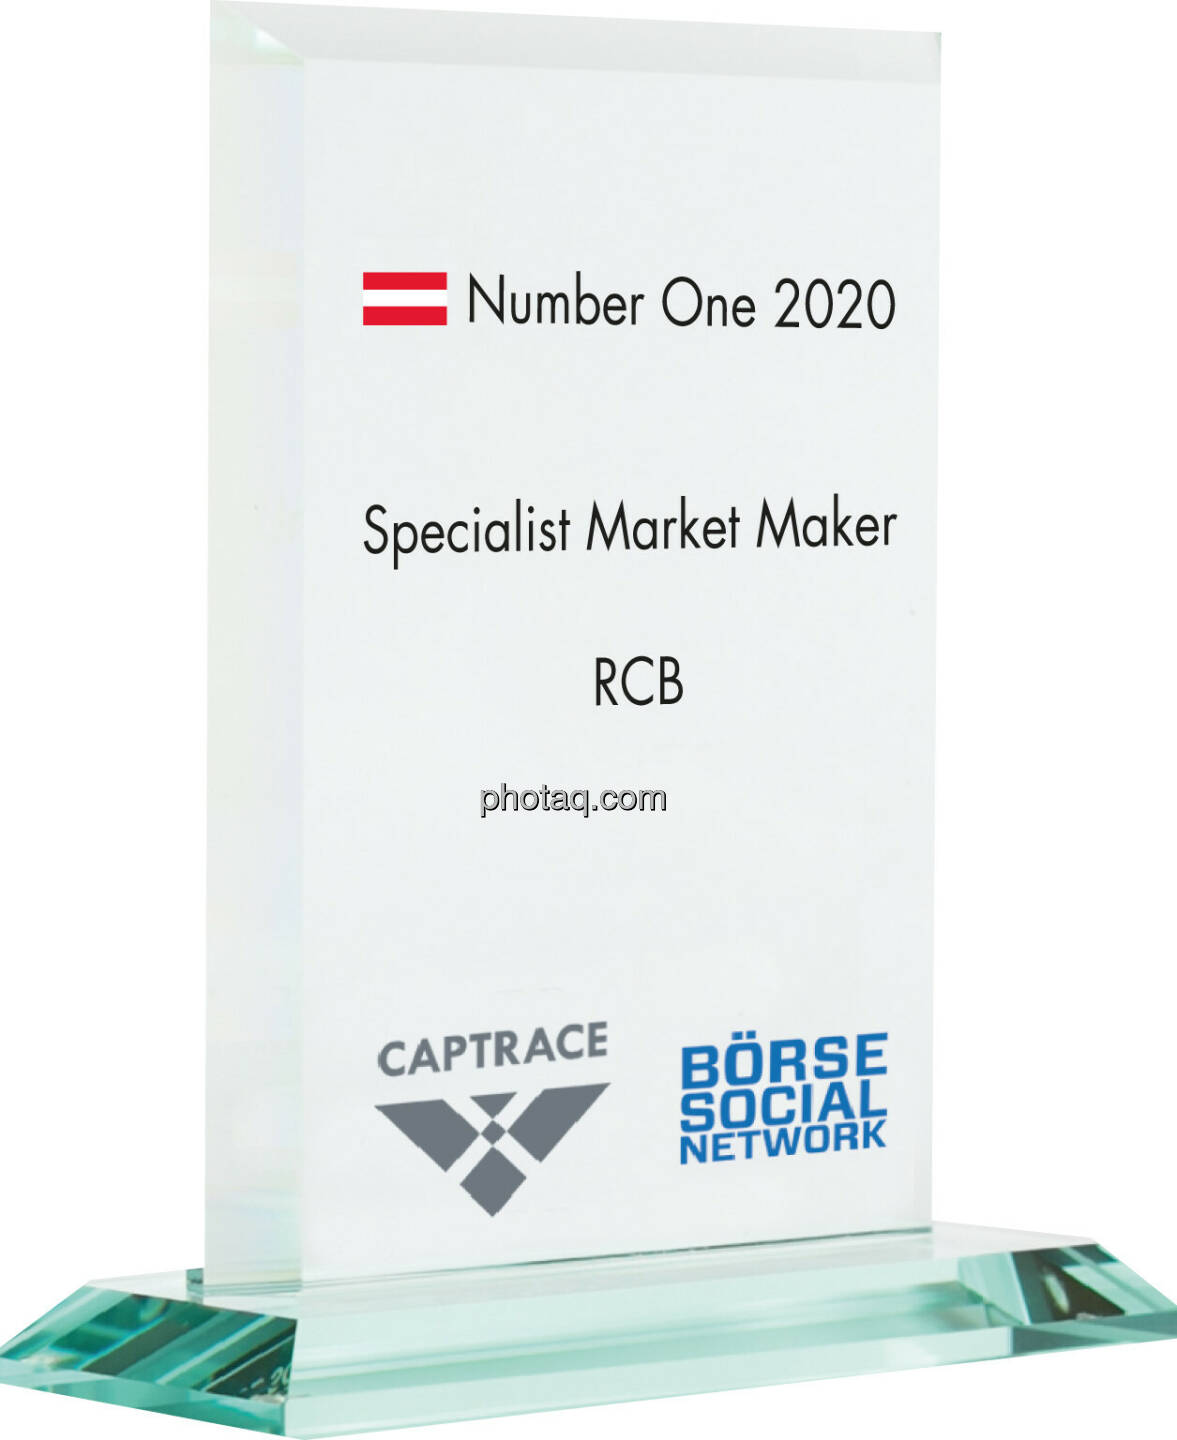 Number One Awards 2020 - Specialist Market Maker RCB